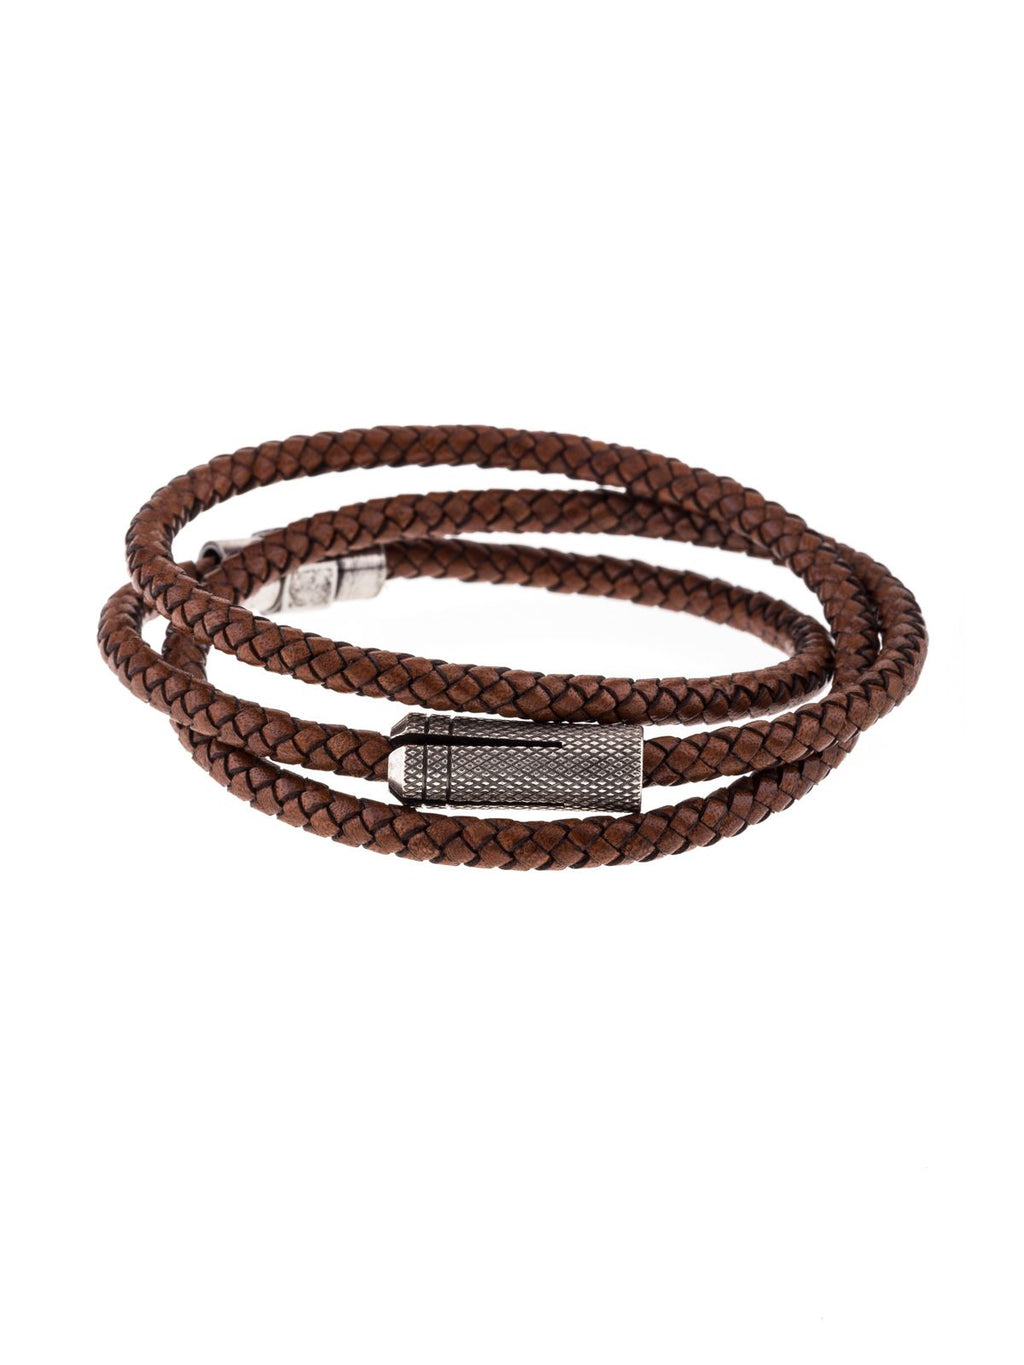 Men's triple leather bracelet